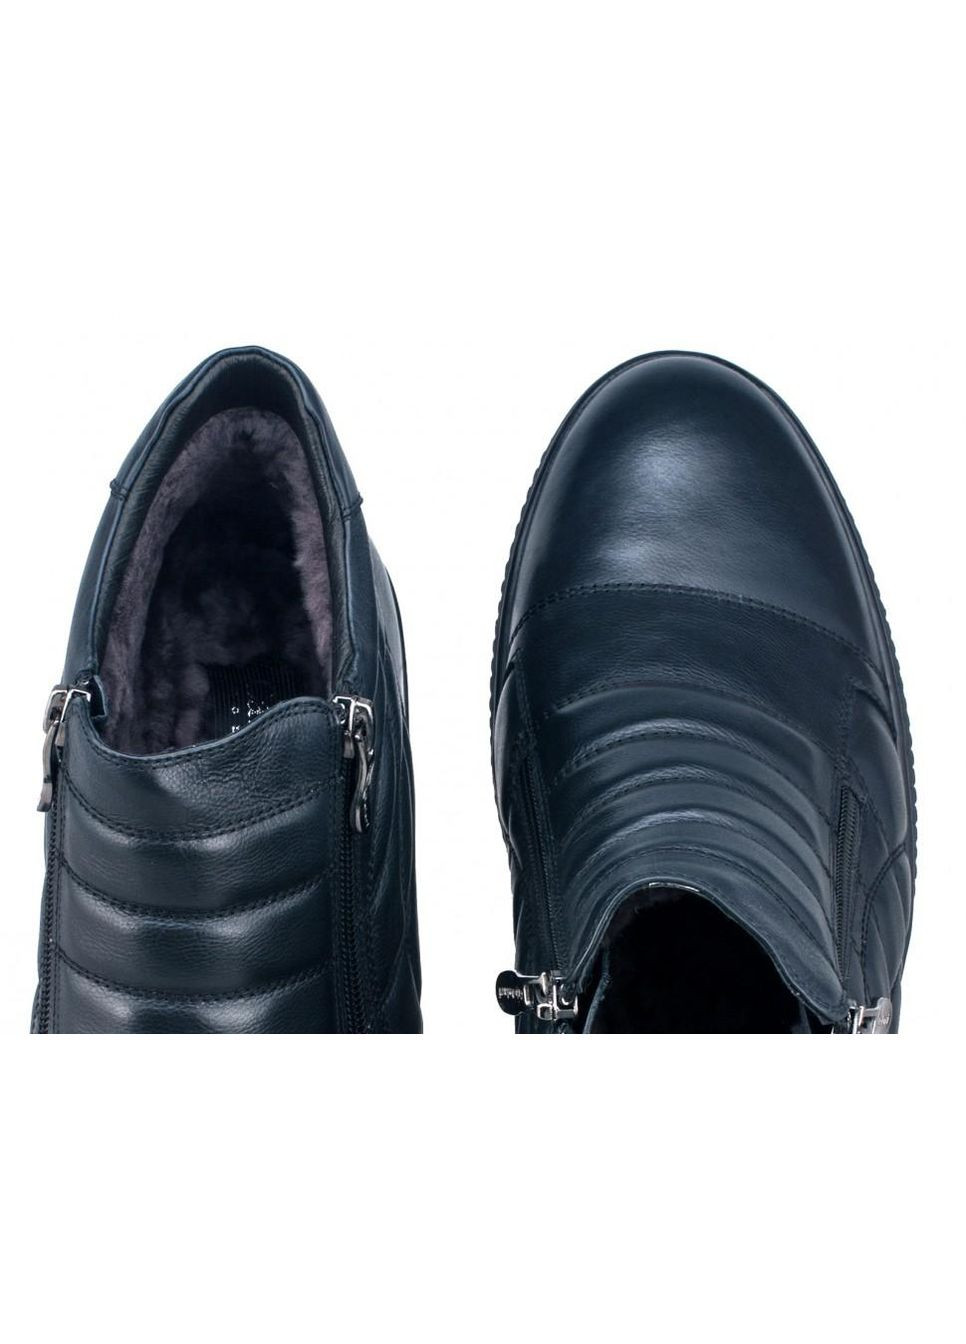 Темно-синие зимние ботинки комфорт 7174067 цвет тёмно-синий Carlo Delari